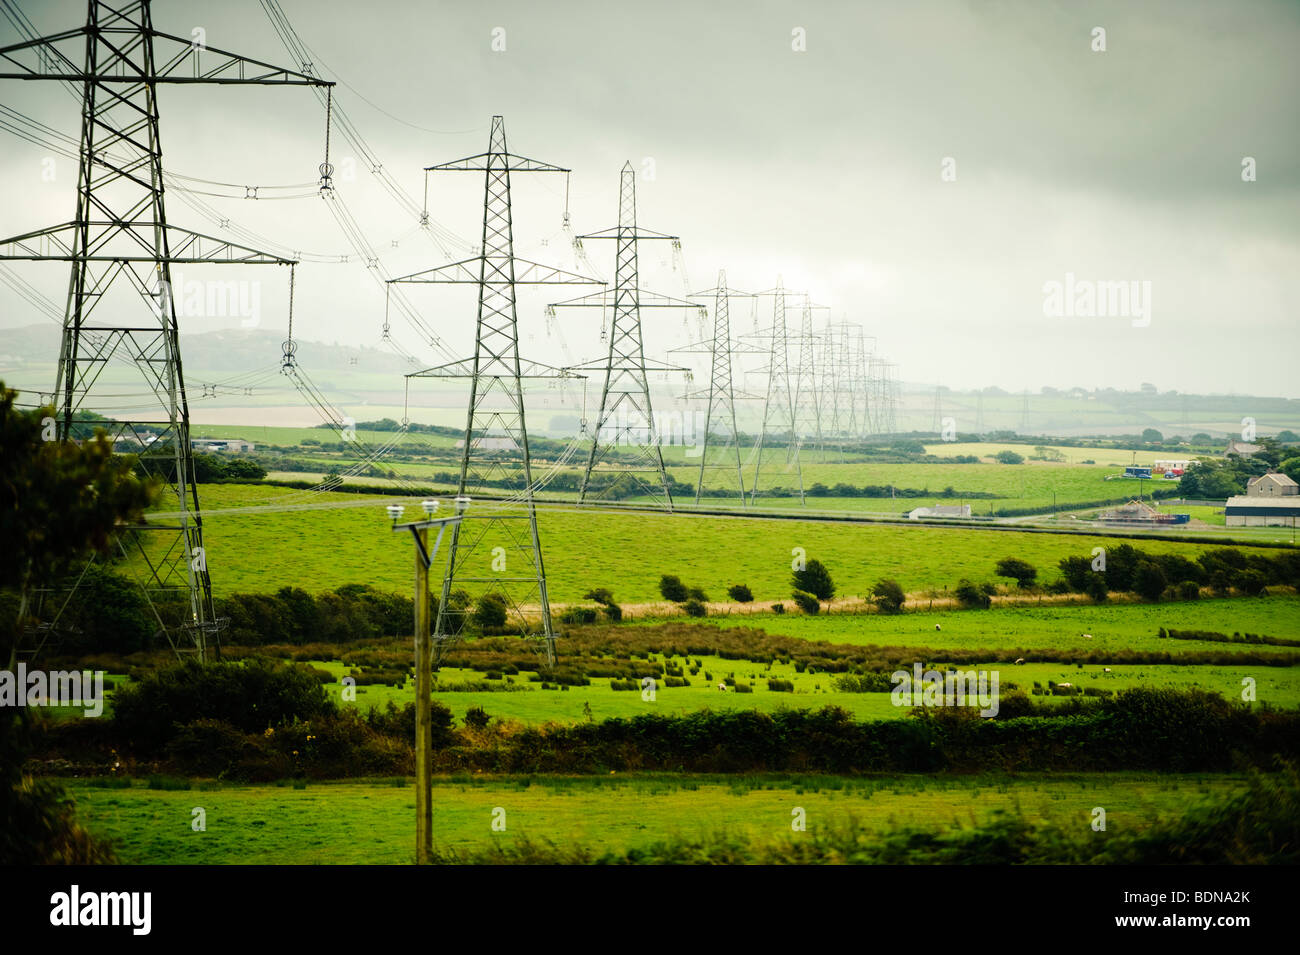 Una linea di National Grid elettricità tralicci marciando attraverso il paesaggio rurale di Anglesey, Galles del Nord Regno Unito Foto Stock